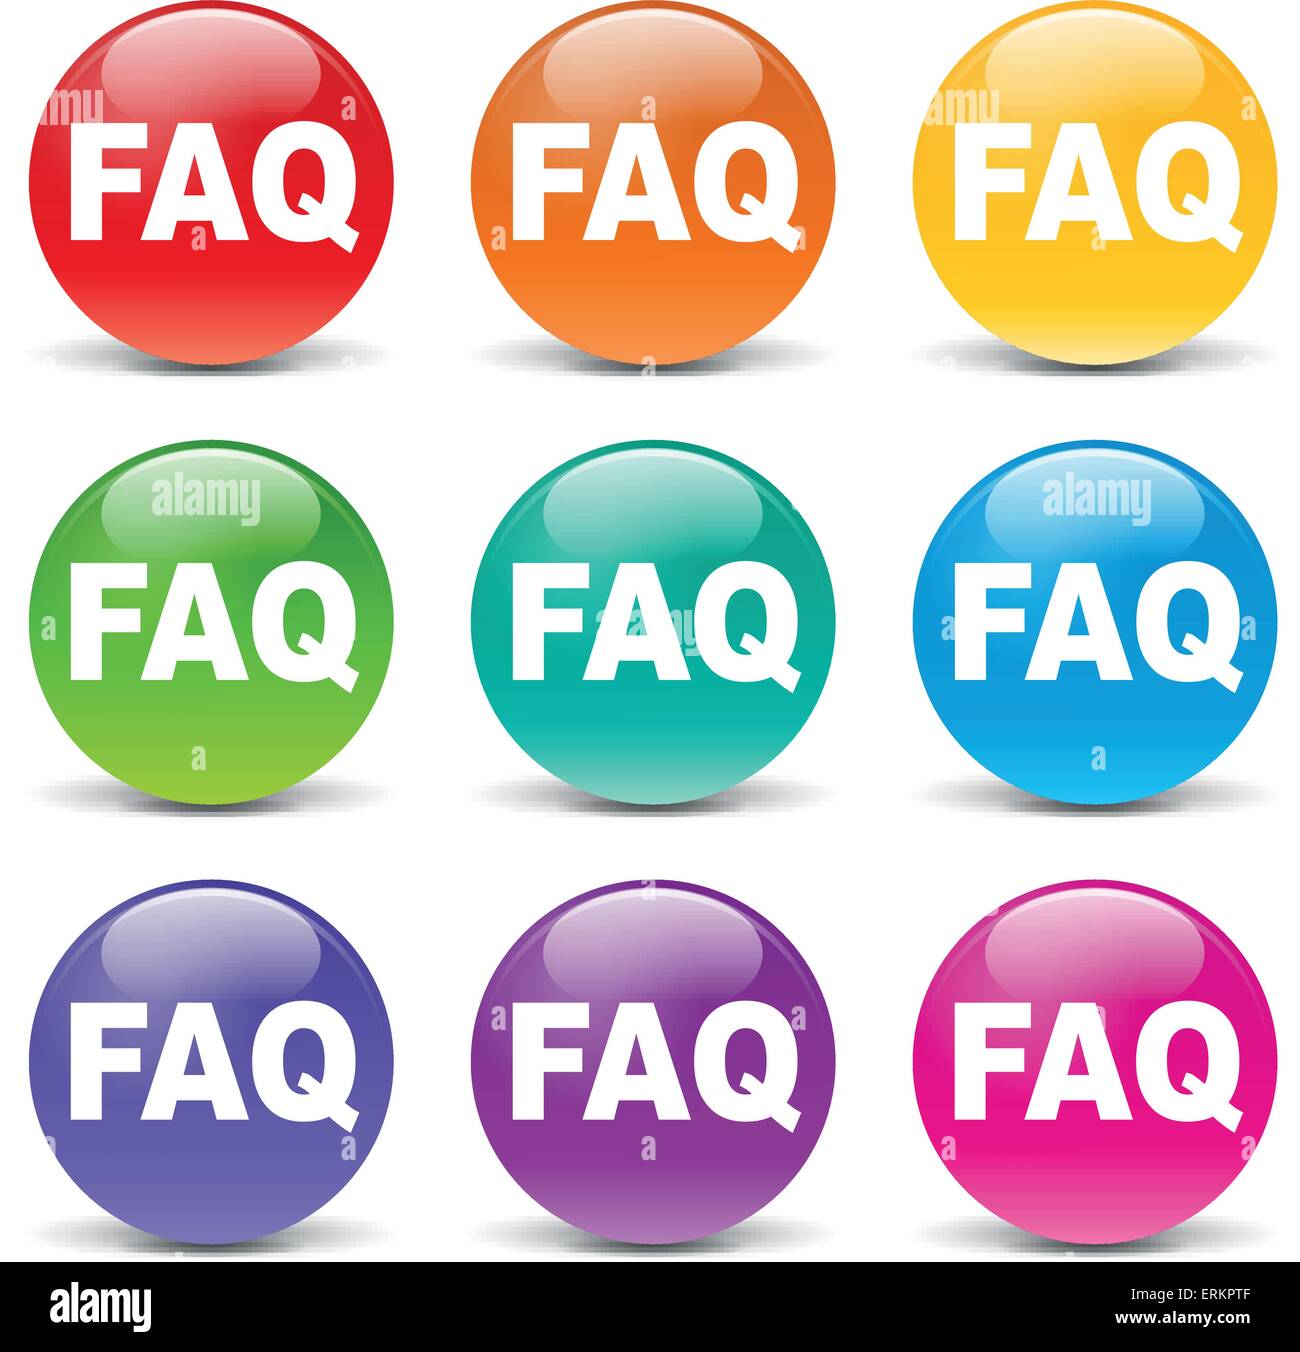 Illustrazione Vettoriale di coloratissimi faq icone su sfondo bianco Illustrazione Vettoriale